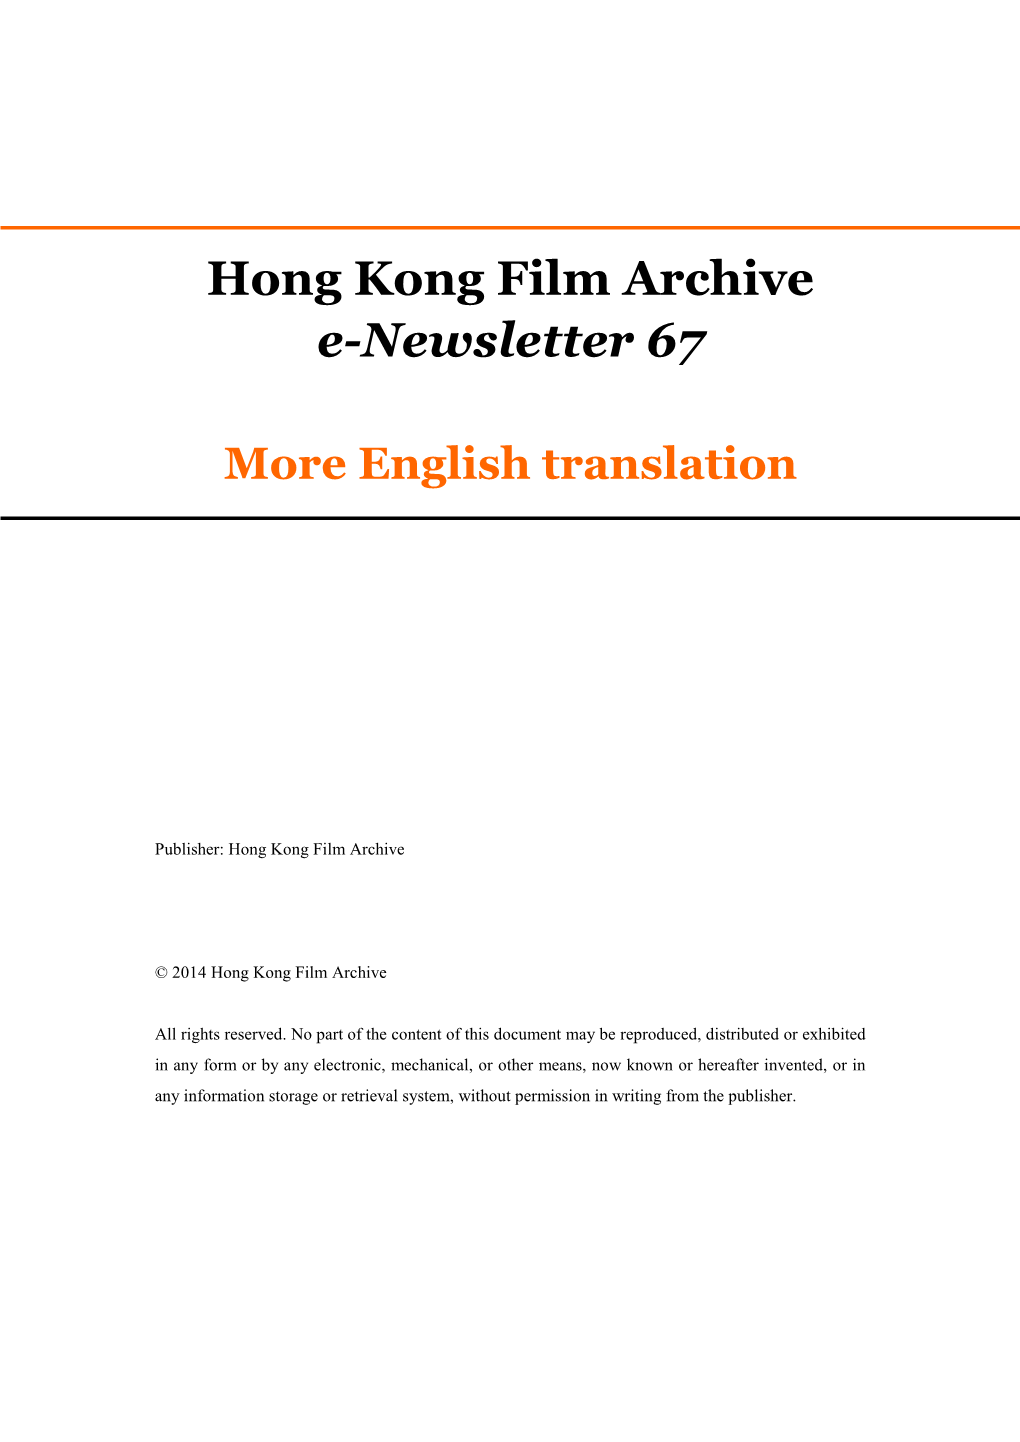 Hong Kong Film Archive E-Newsletter 67